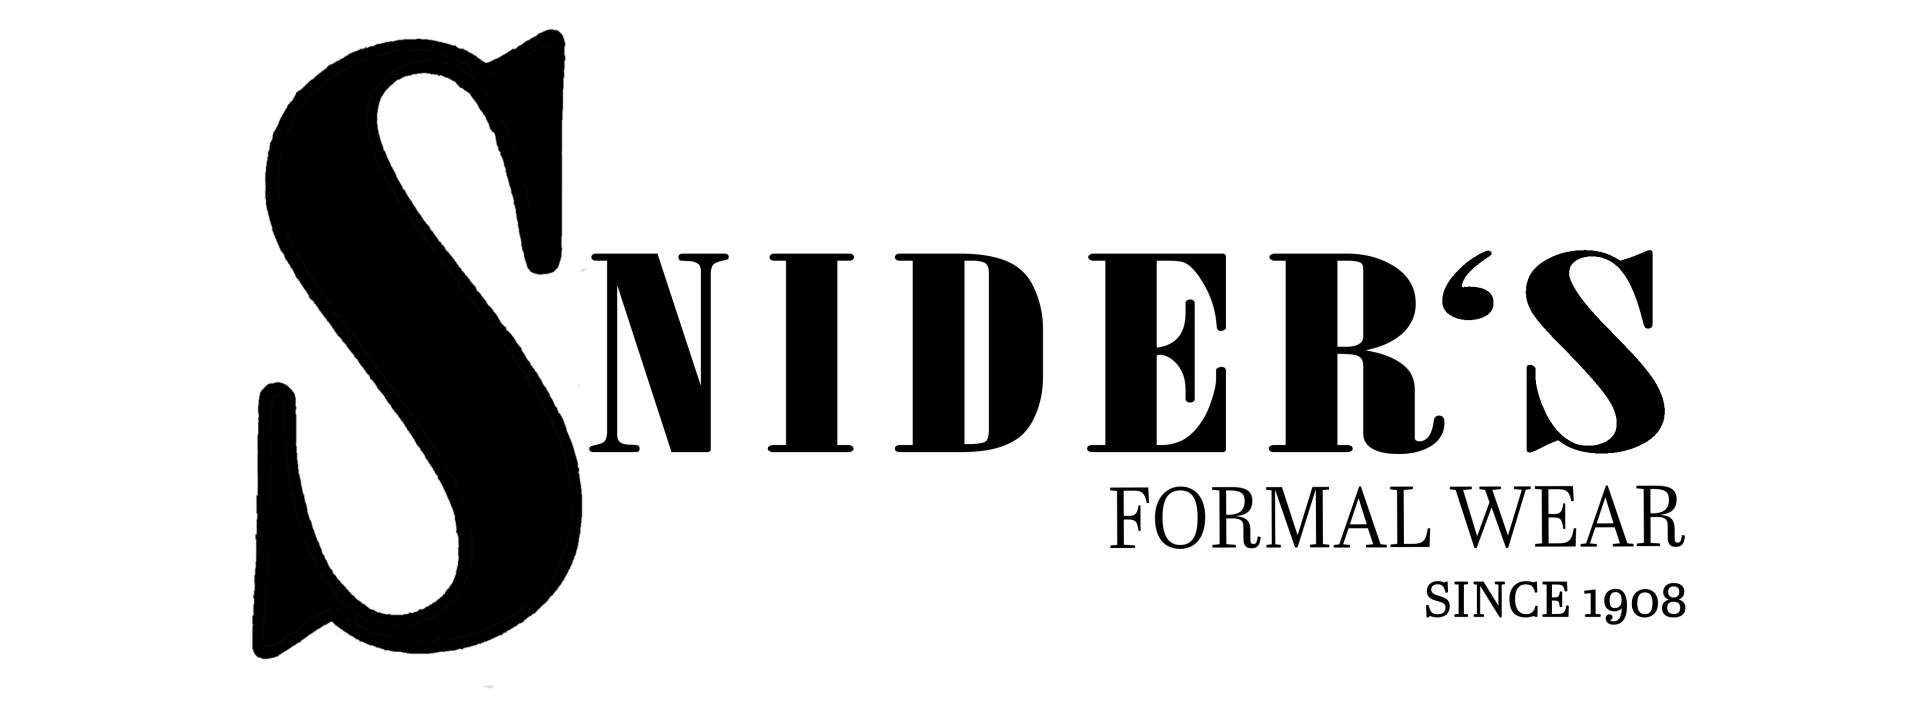 Snider's Formal Wear logo